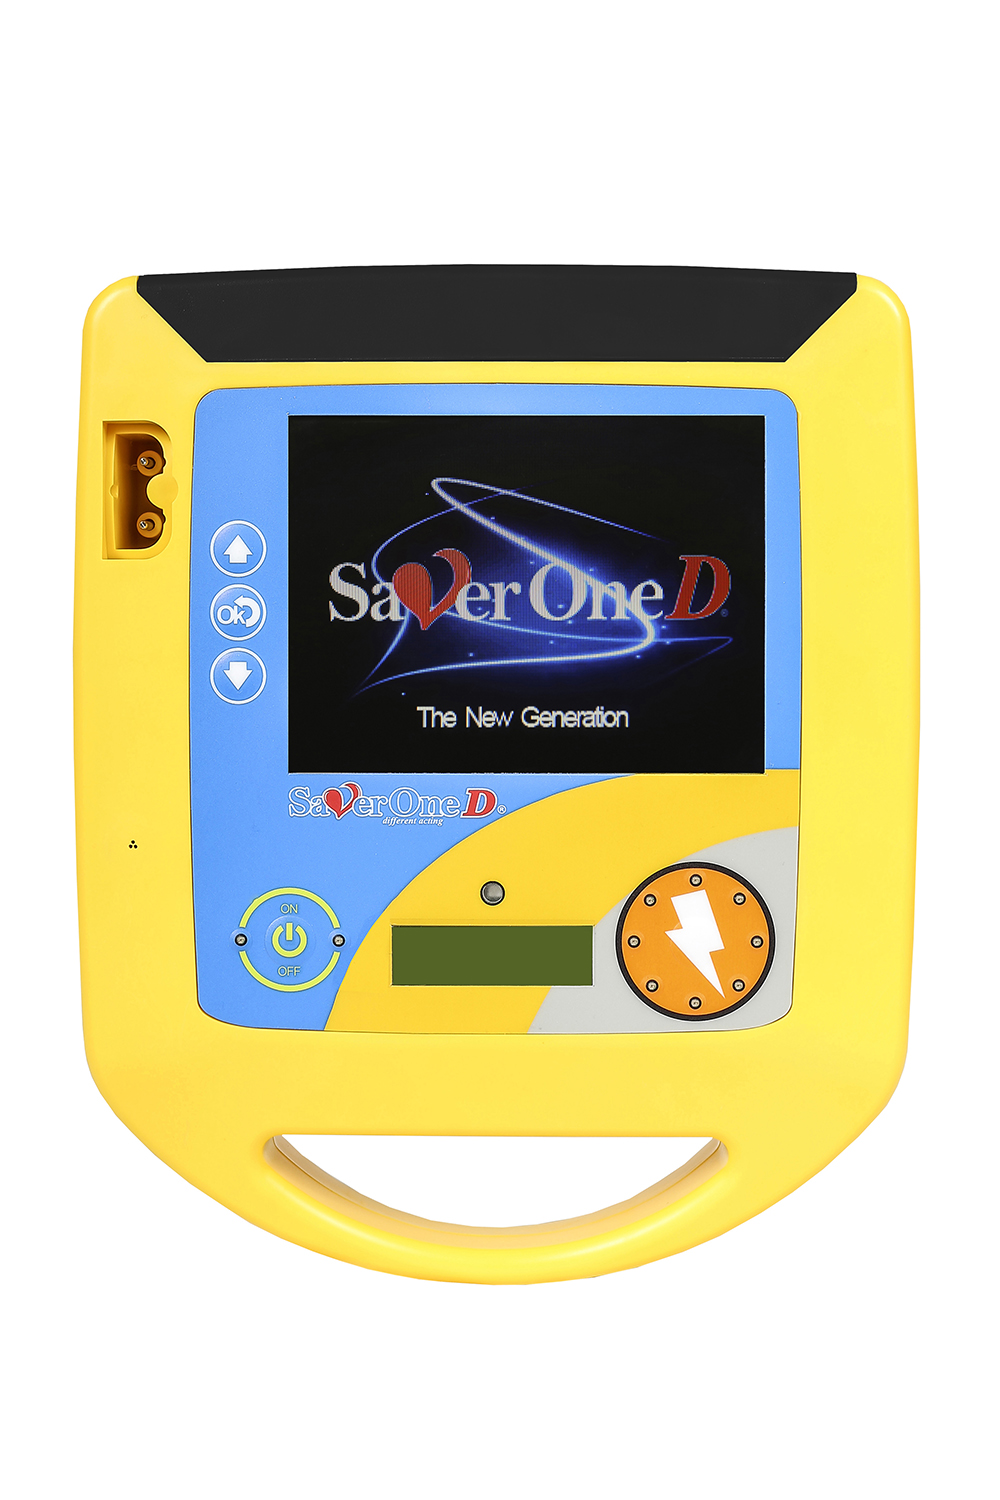 Saver One AED Profi Defibrillator Modell D mit 360 Joule und Akku Upgrade